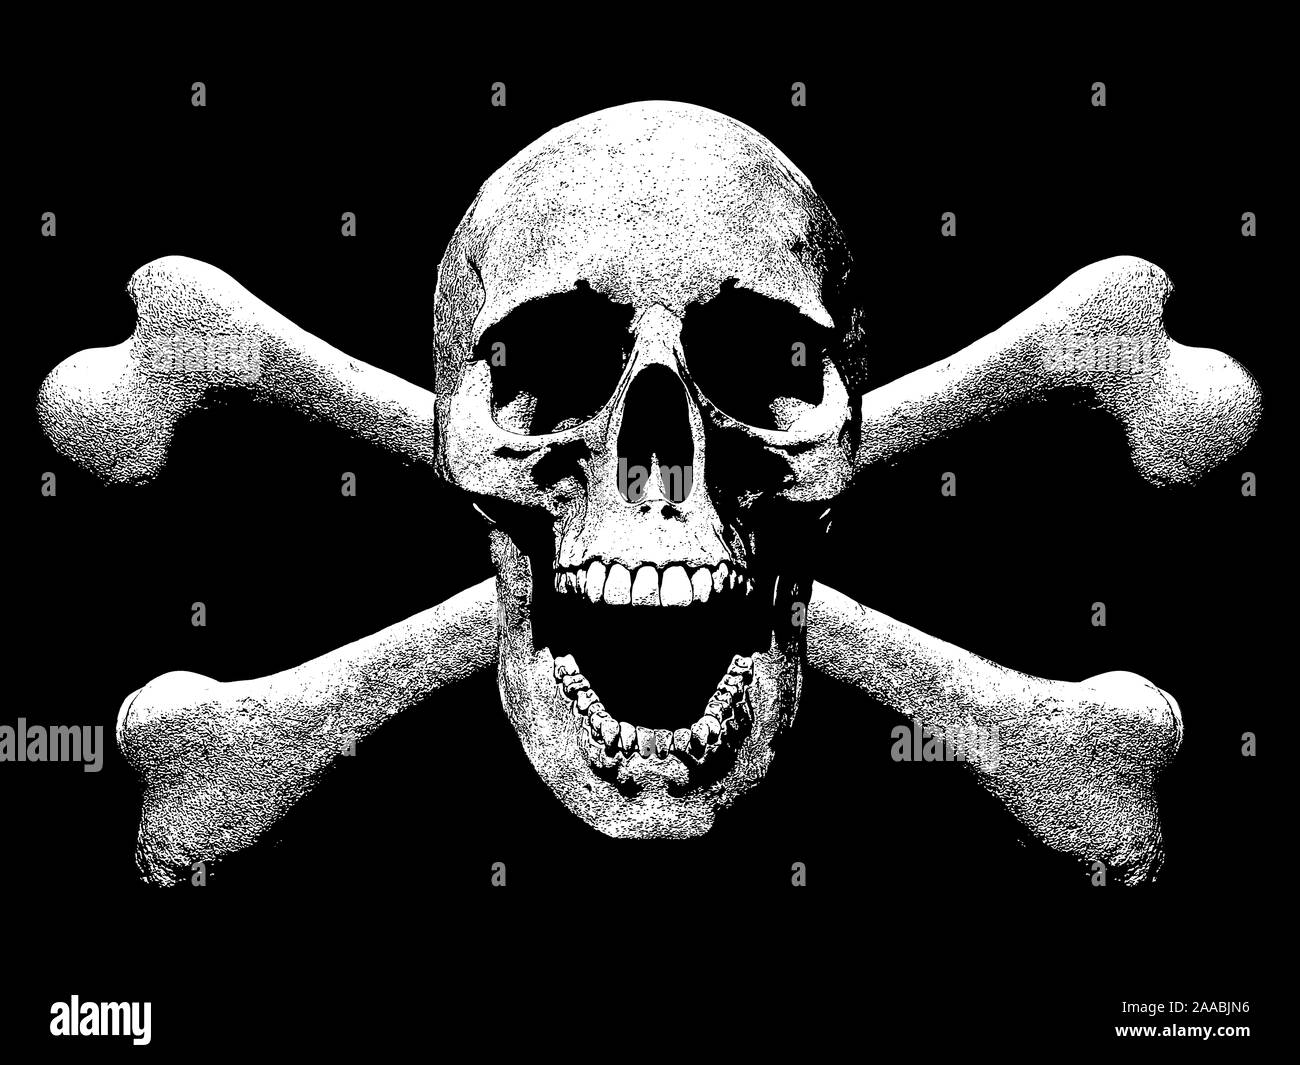 52,801 Skull Crossbones Images, Stock Photos, 3D objects, & Vectors